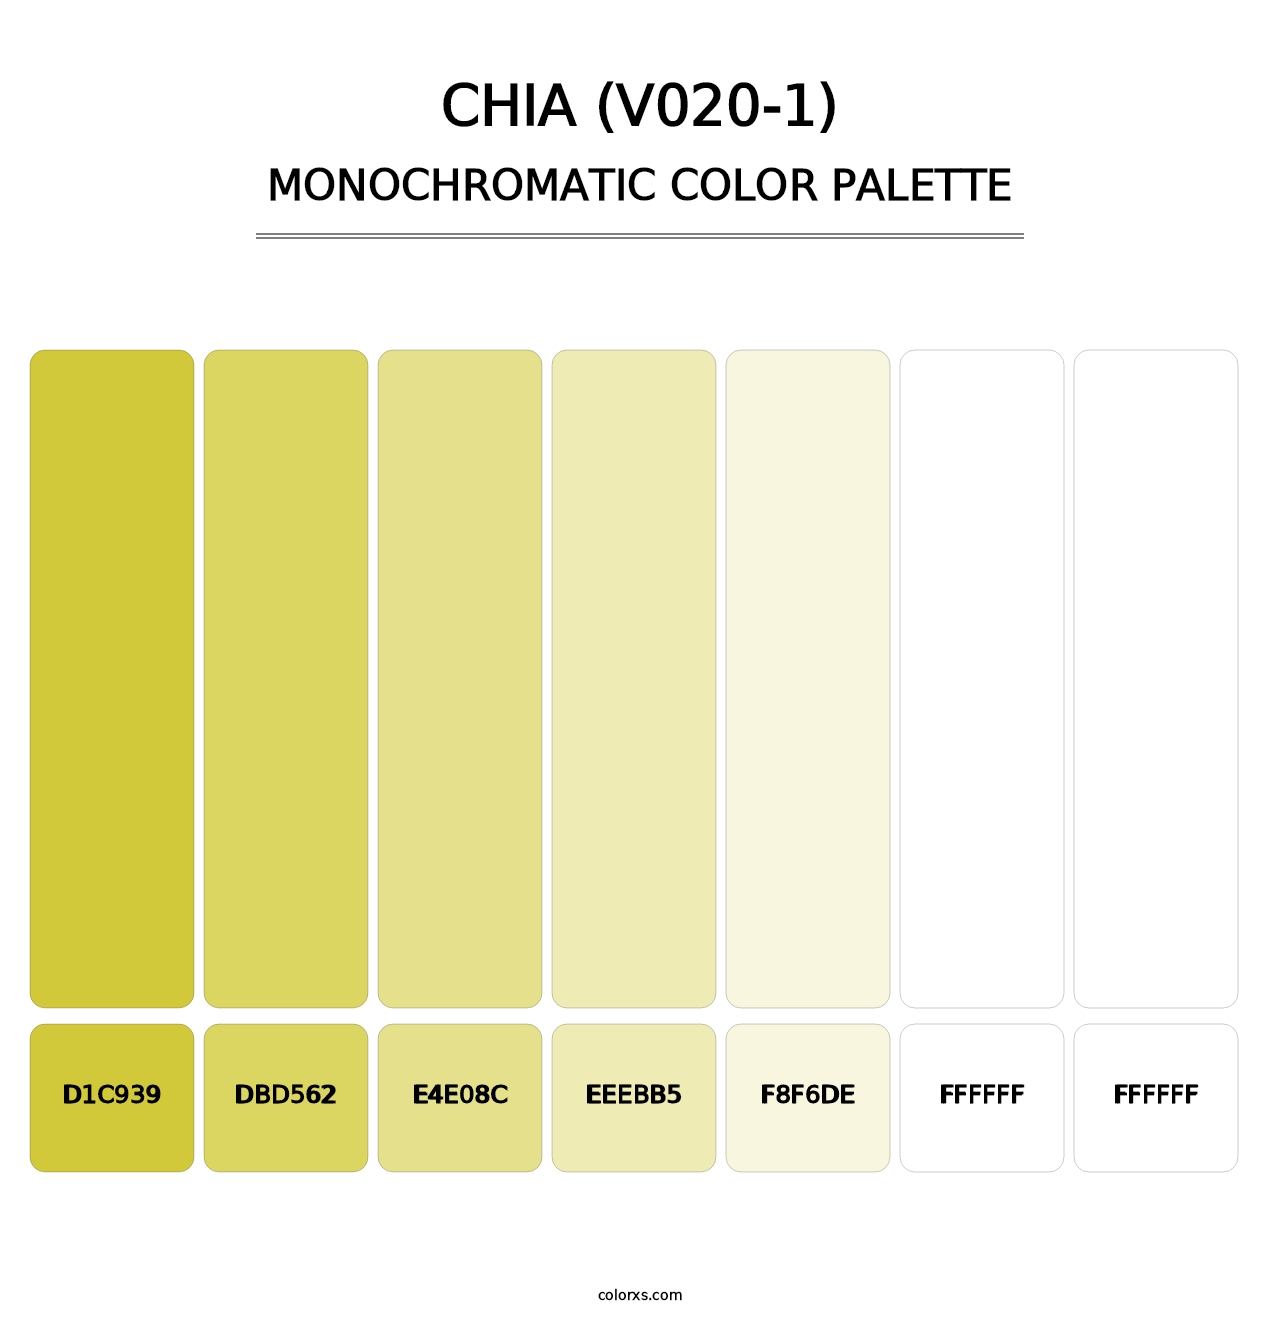 Chia (V020-1) - Monochromatic Color Palette